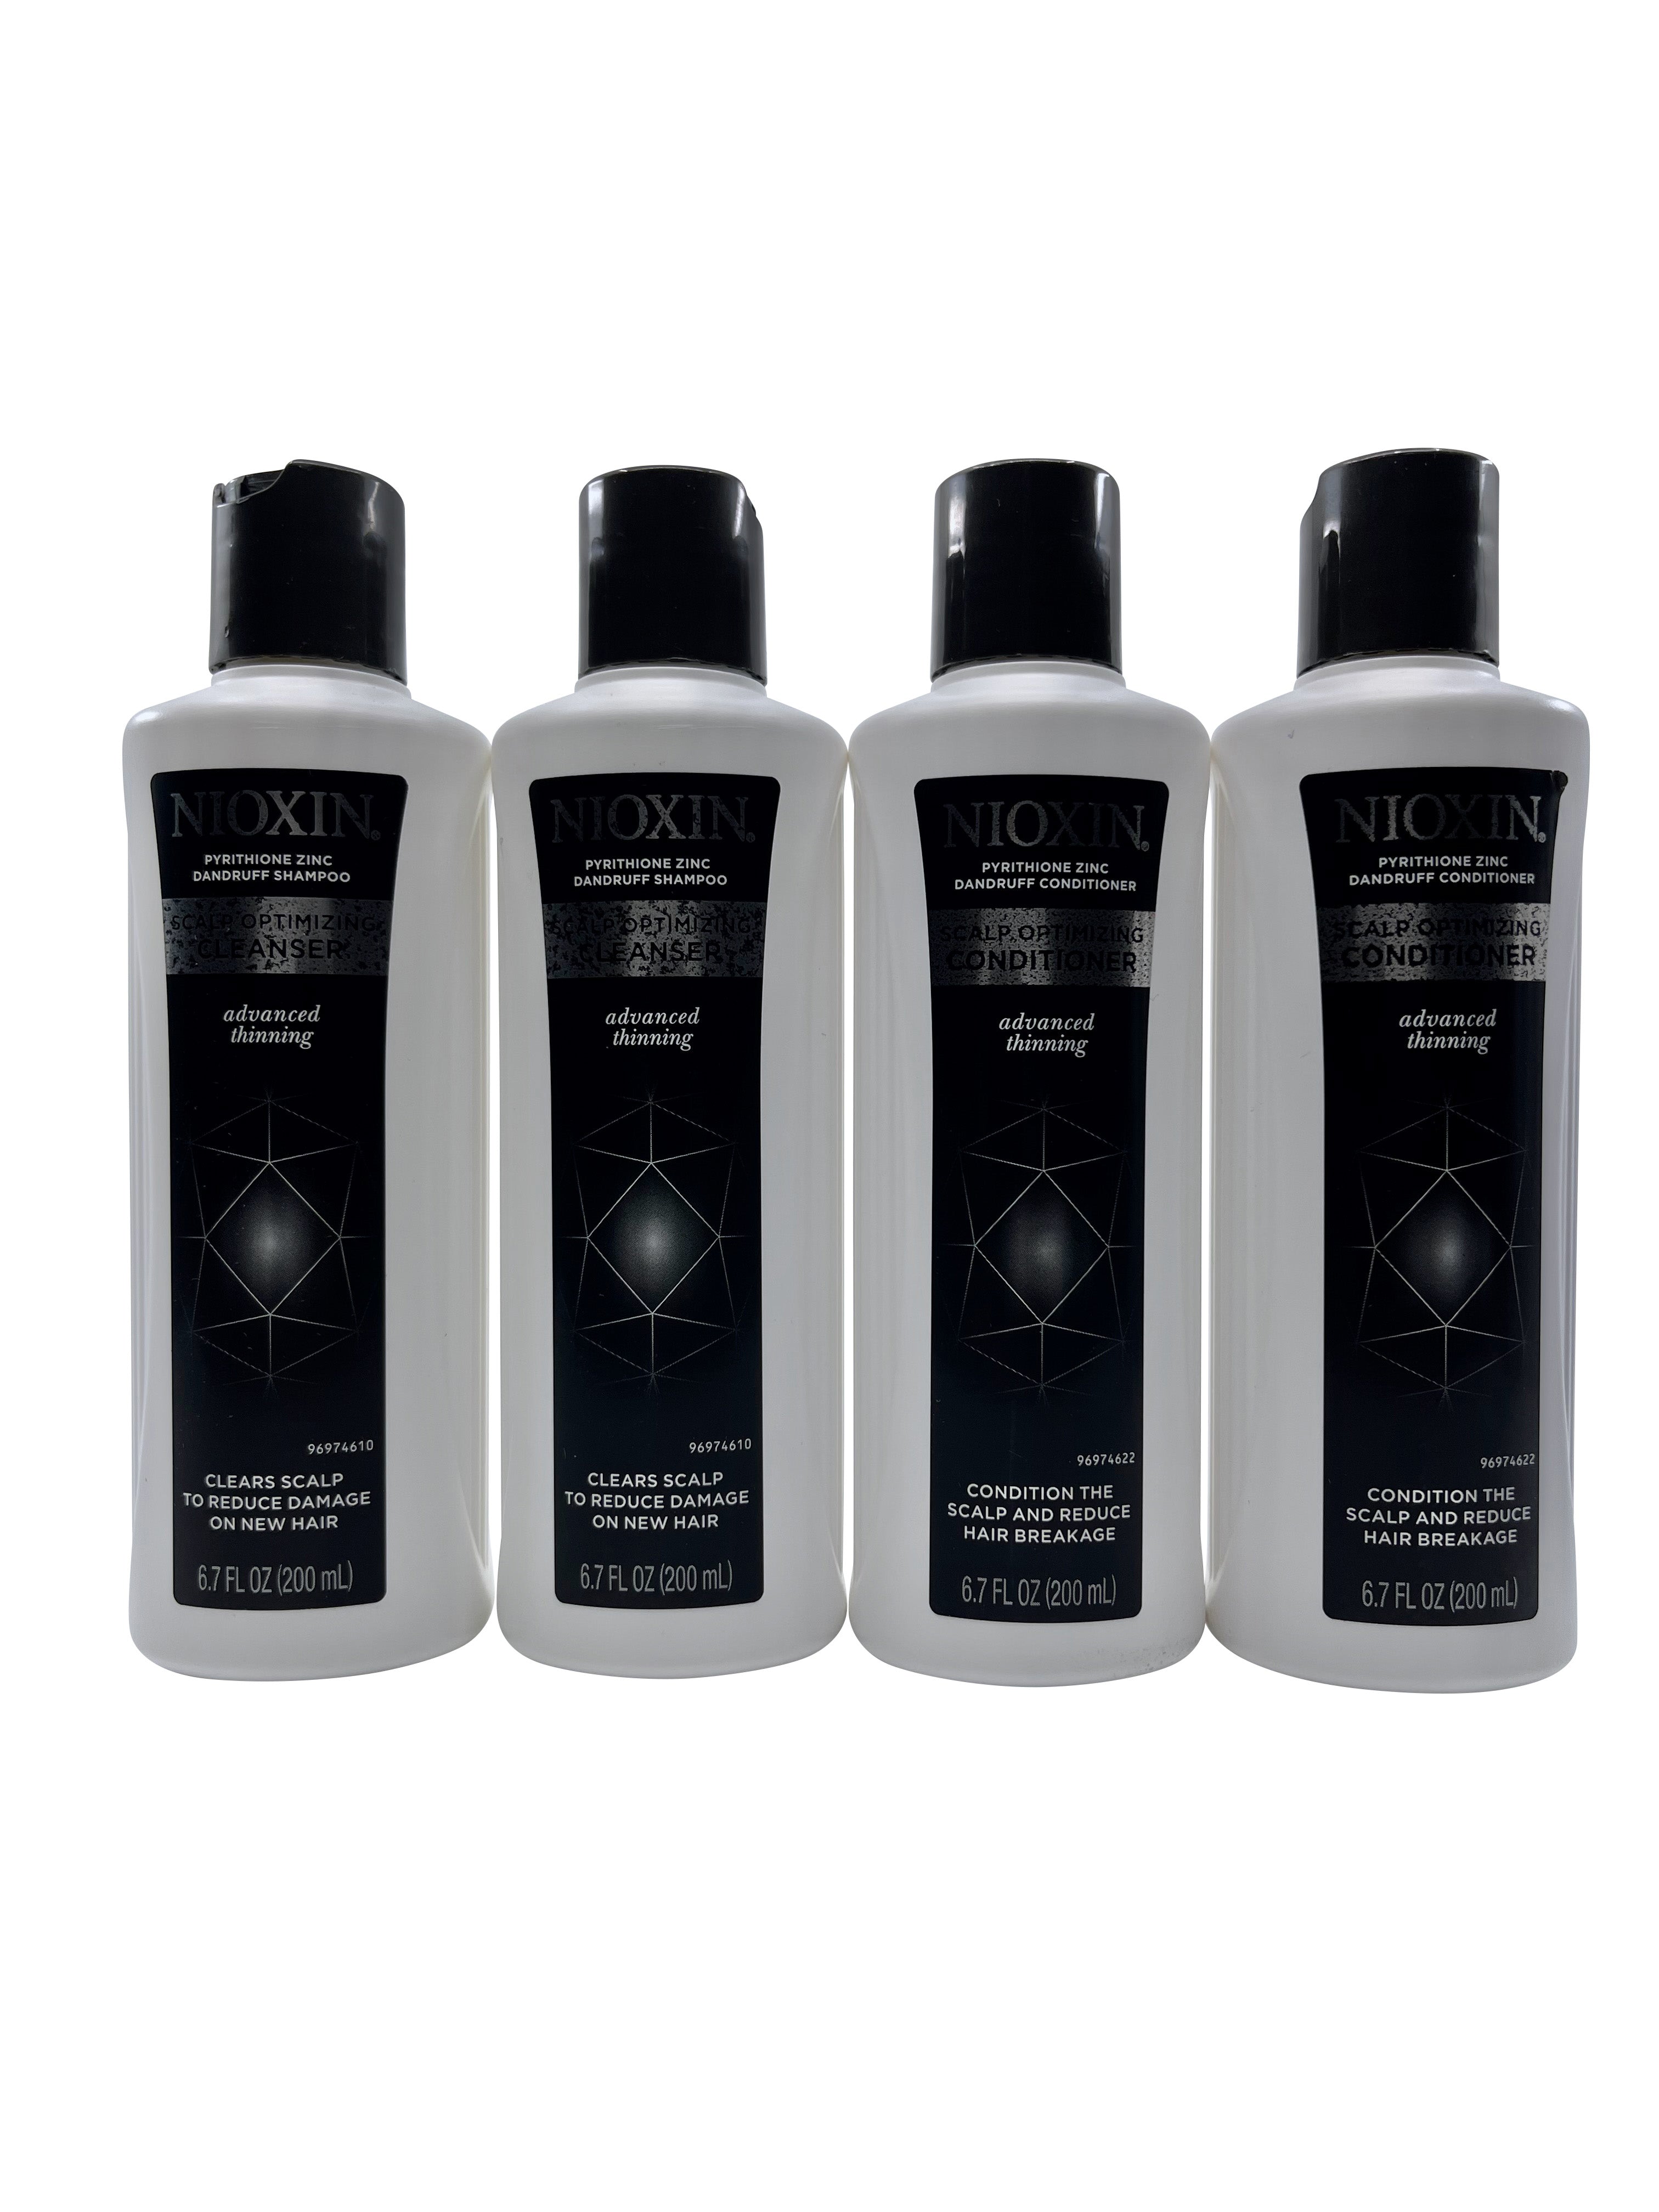 Nioxin Pyrithione Zinc Dandruff Shampoo 6.7 OZ Duo & Conditioner 6.7 OZ Duo One Size